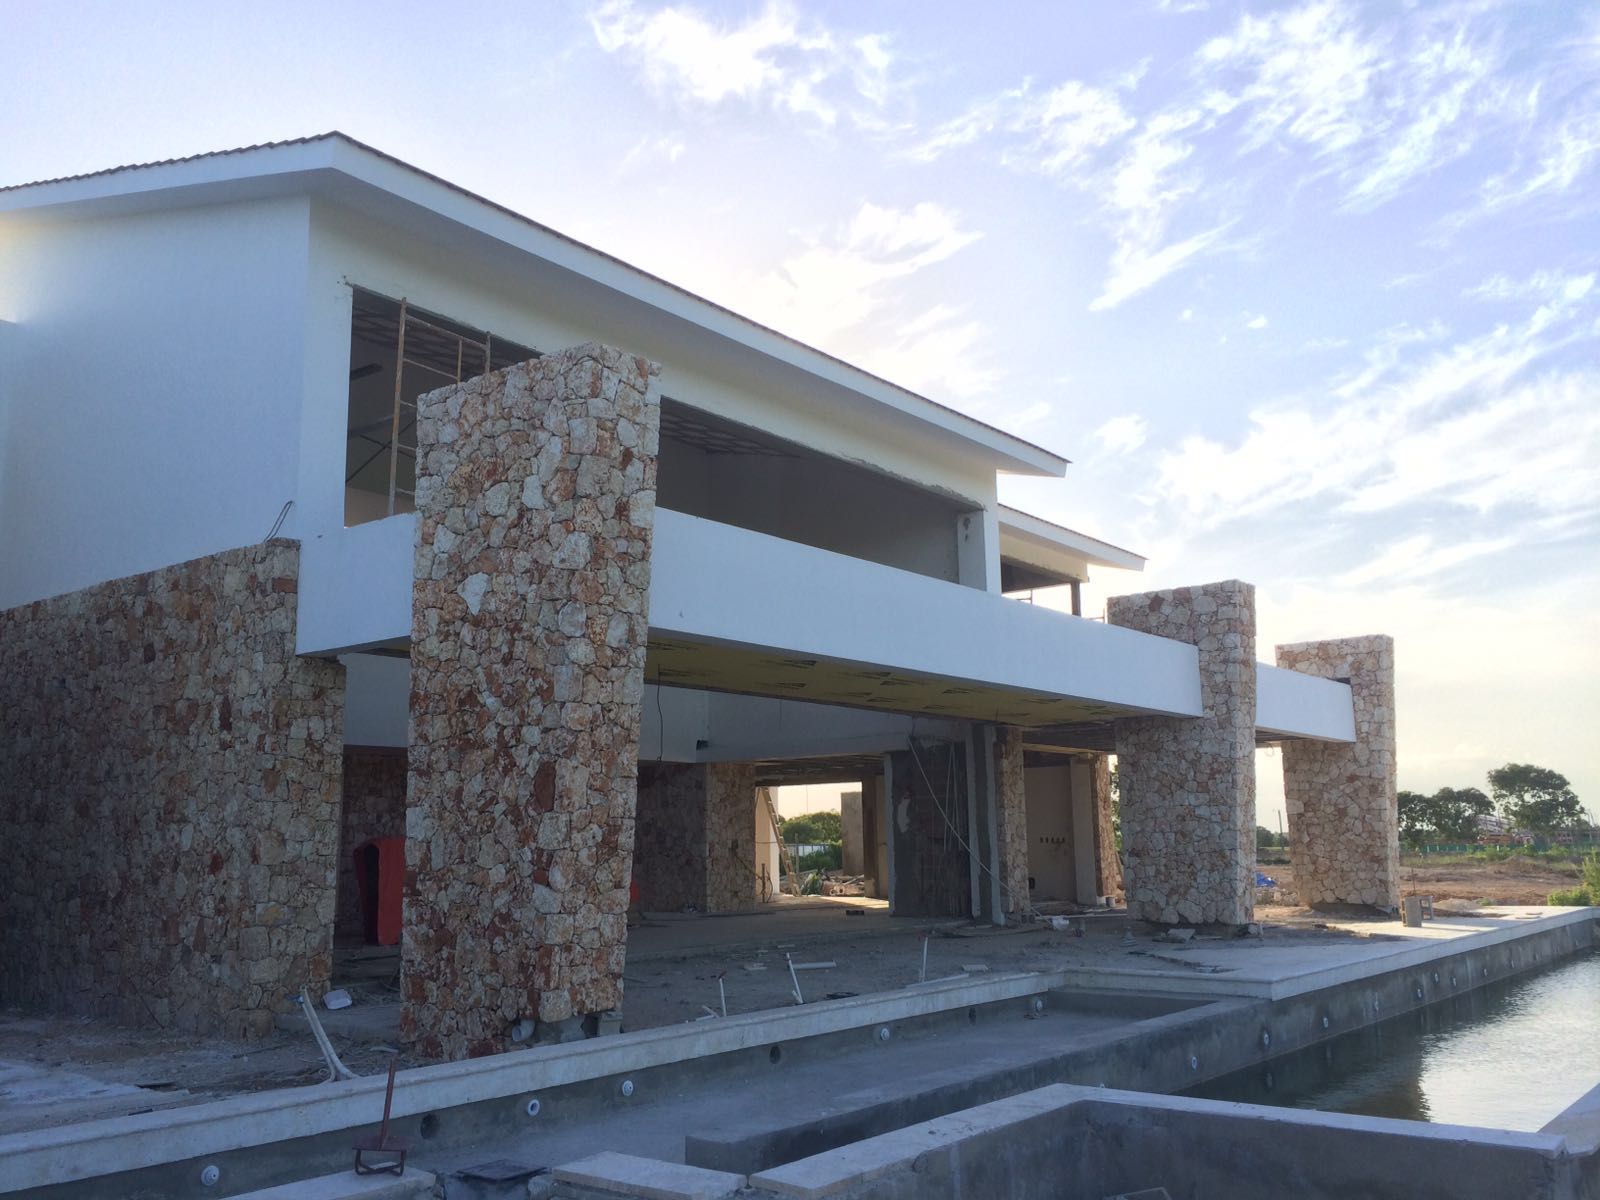 La Villa Dye Fore, otro de los proyectos de Juan Granell en República Dominicana, actualmente en fase de construcción.